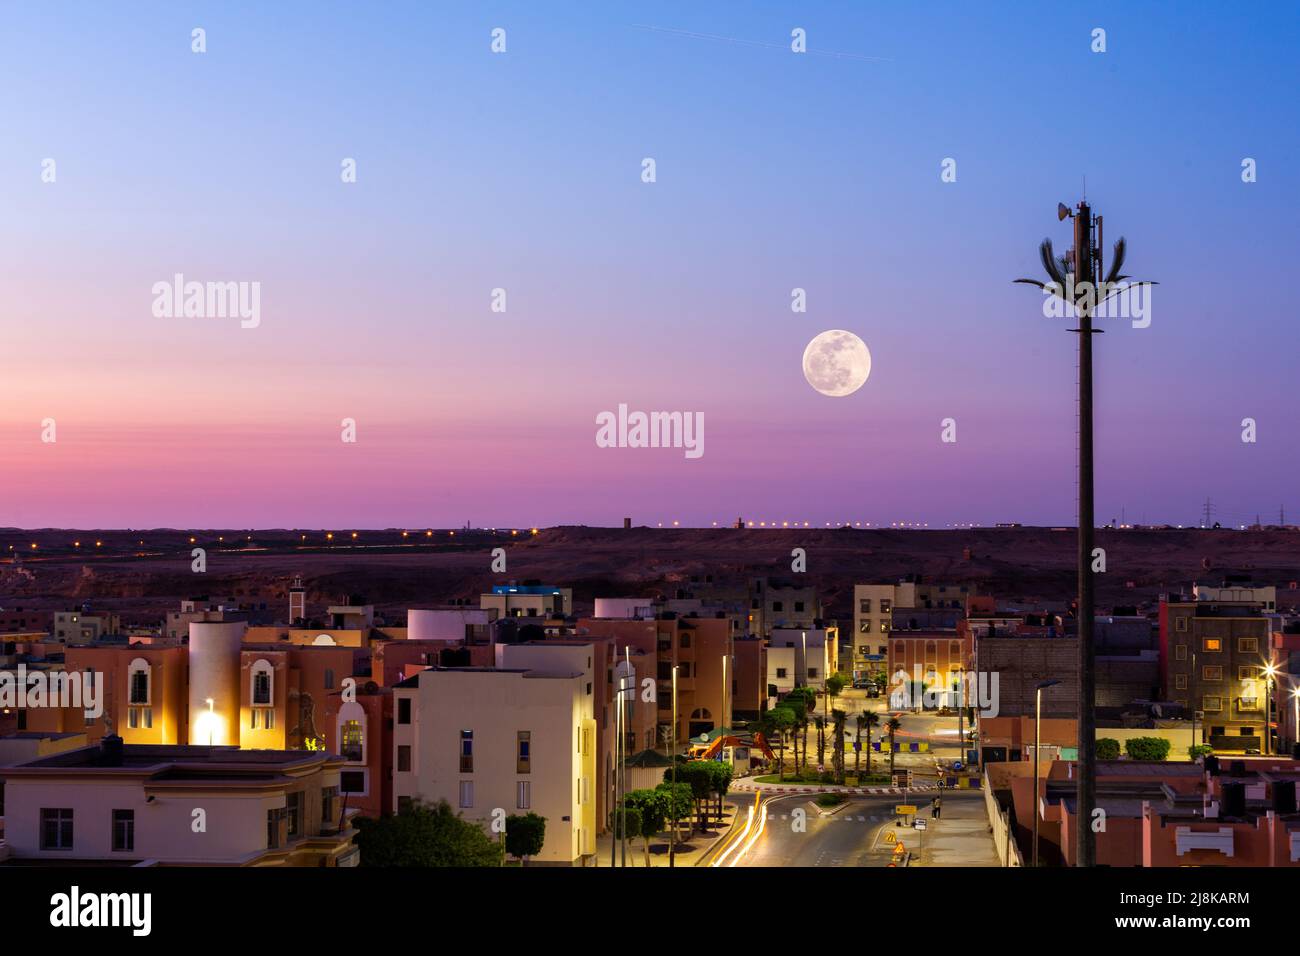 Pleine lune au-dessus d'un ciel violet dans la ville de Laayoune au Maroc Banque D'Images